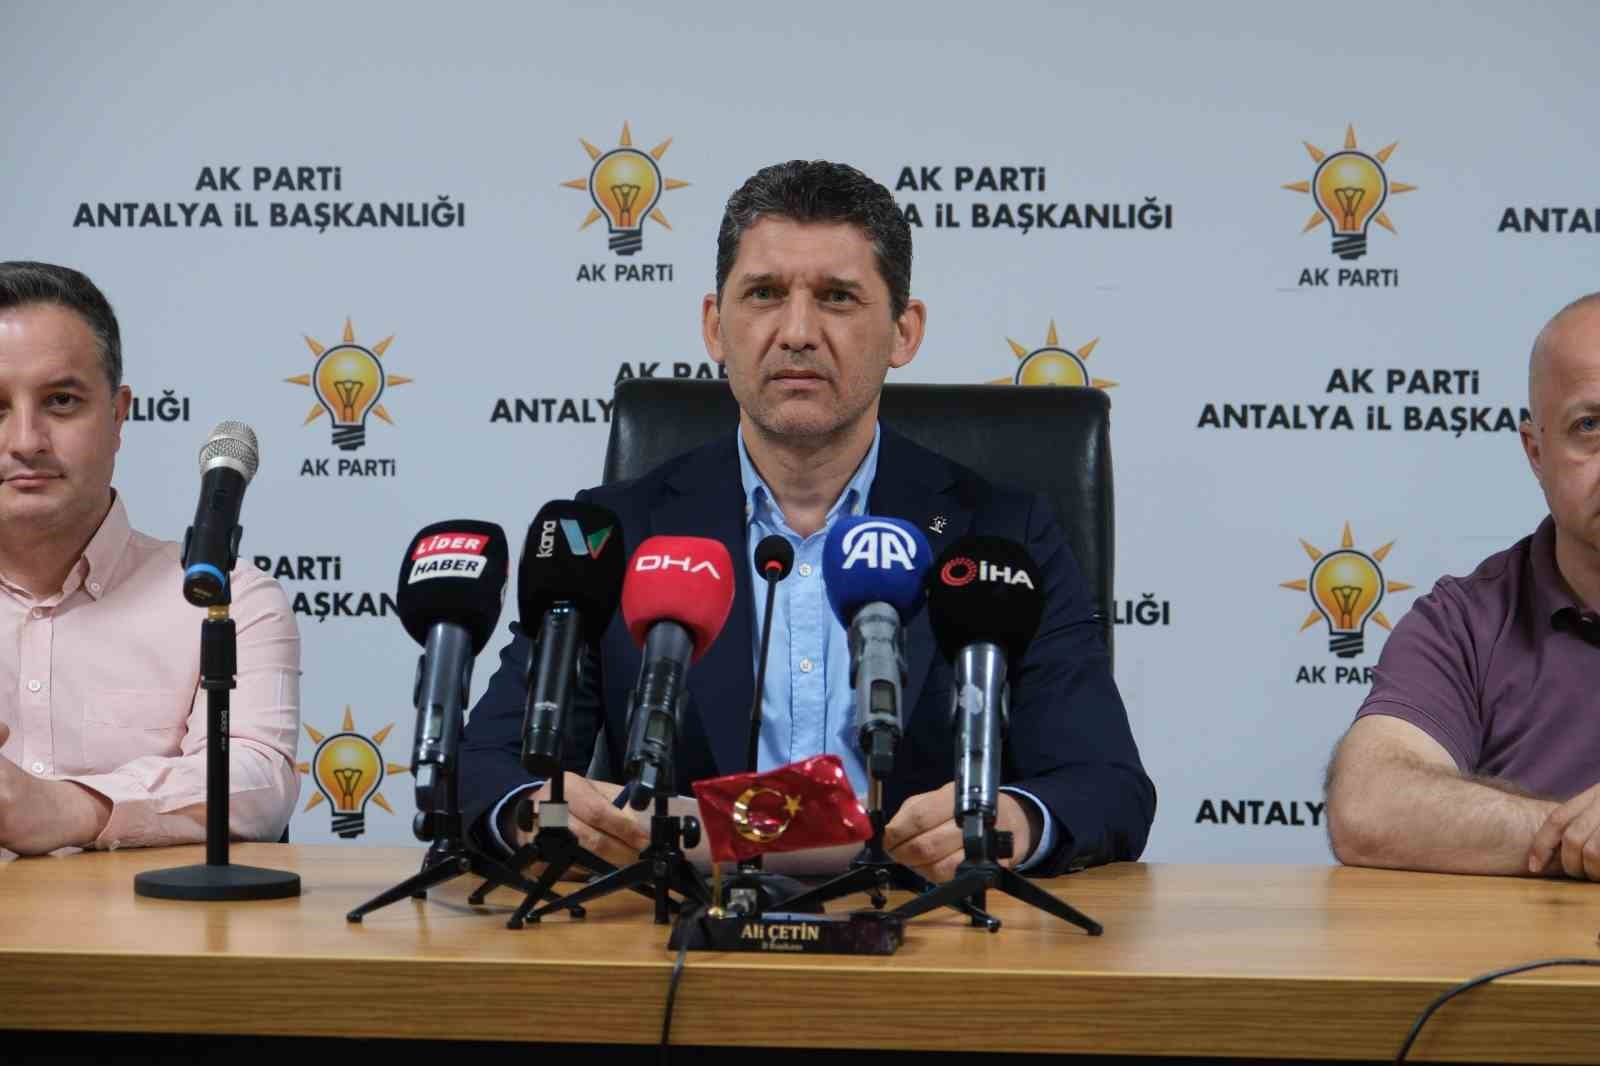 AK Parti İl Başkanı Ali Çetin: "Teleferik kazası adli bir olaydır"
